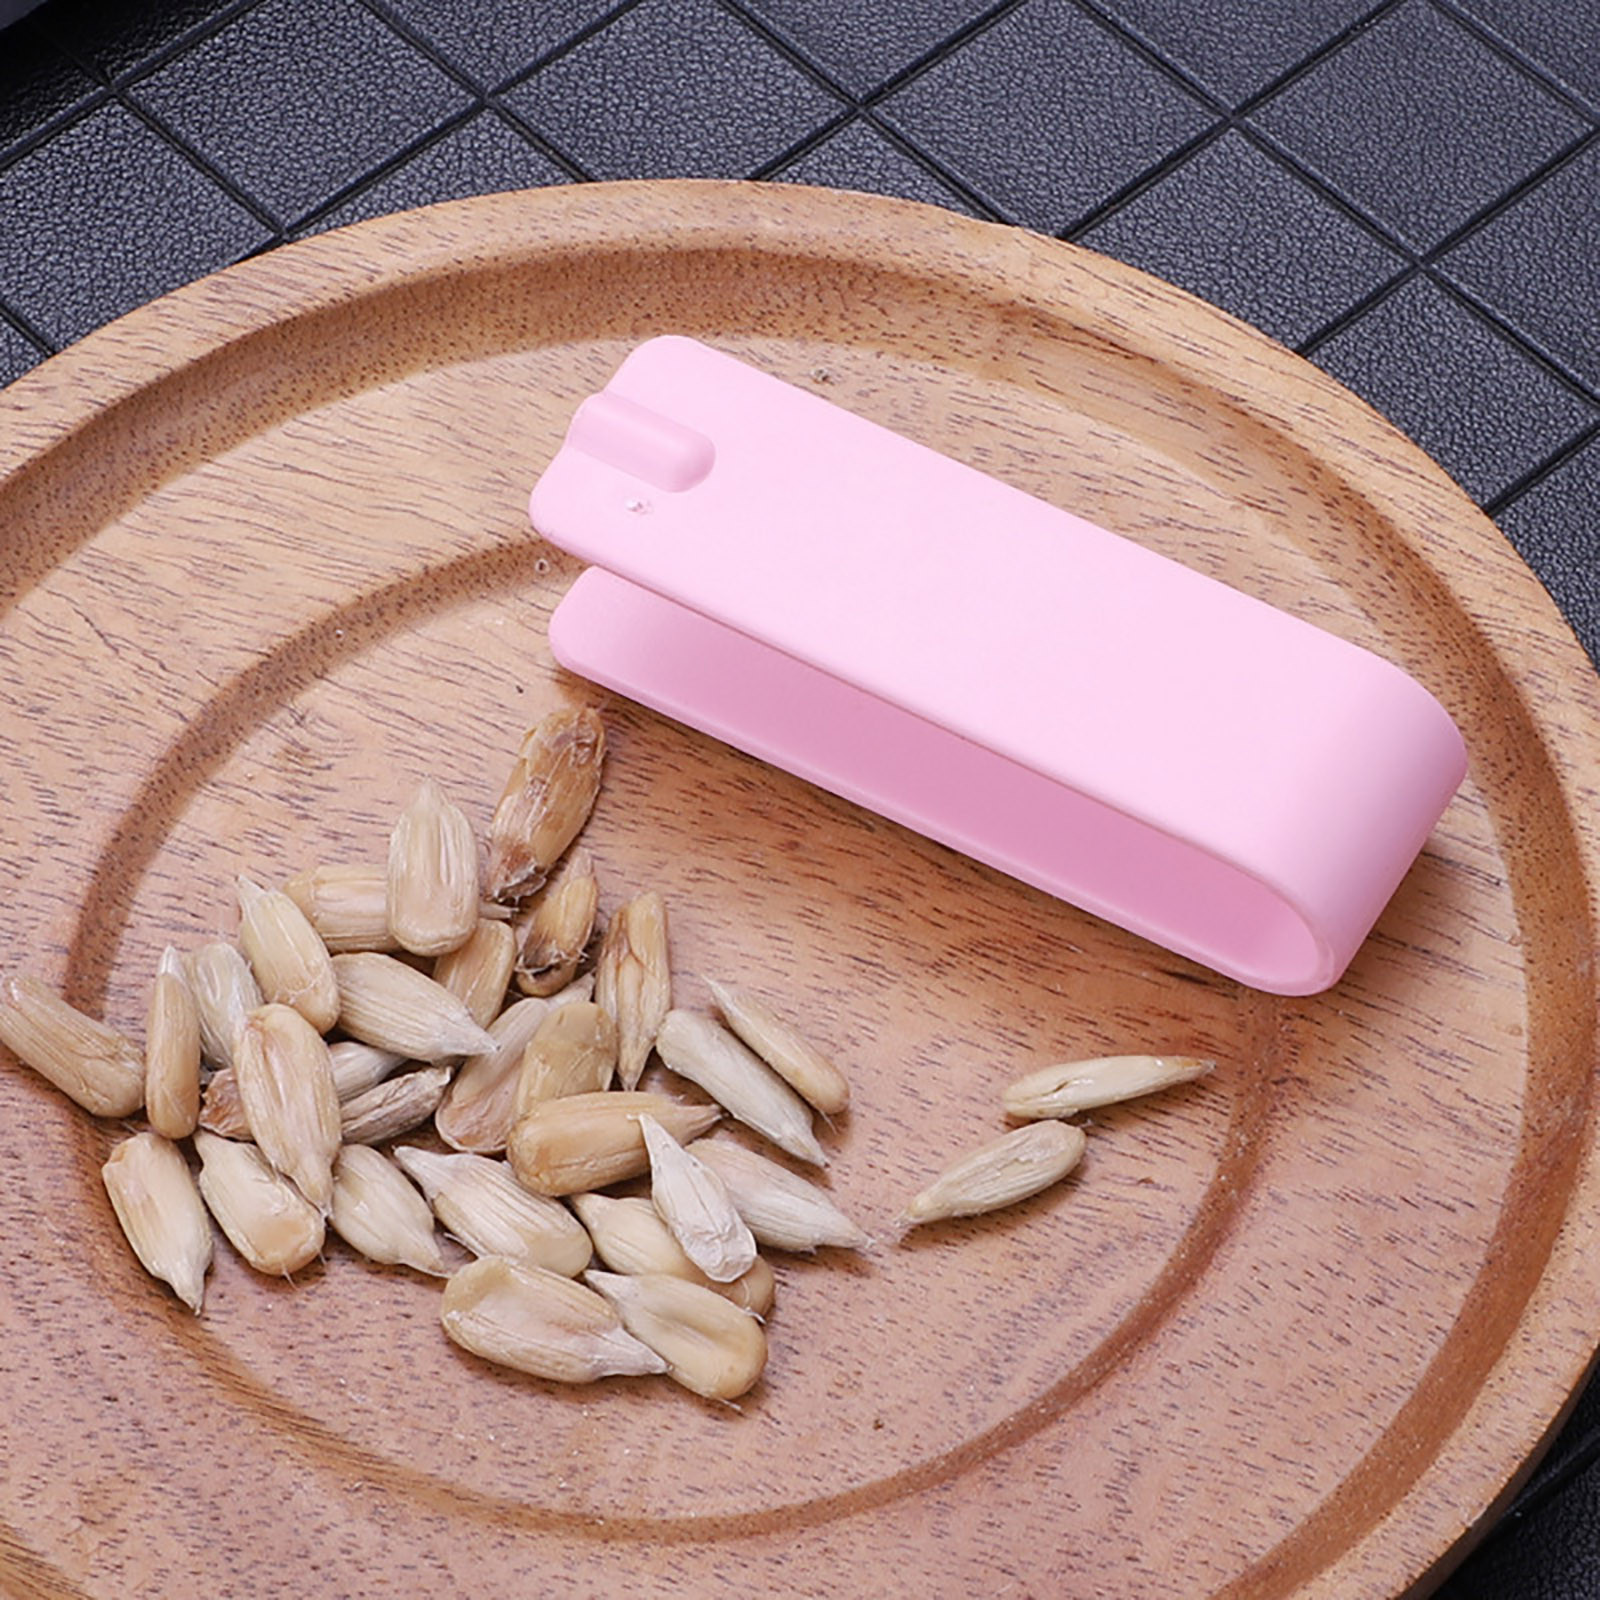 Stainless Steel Melon Seed Peeler Nut Opener Easy Efficient - Temu